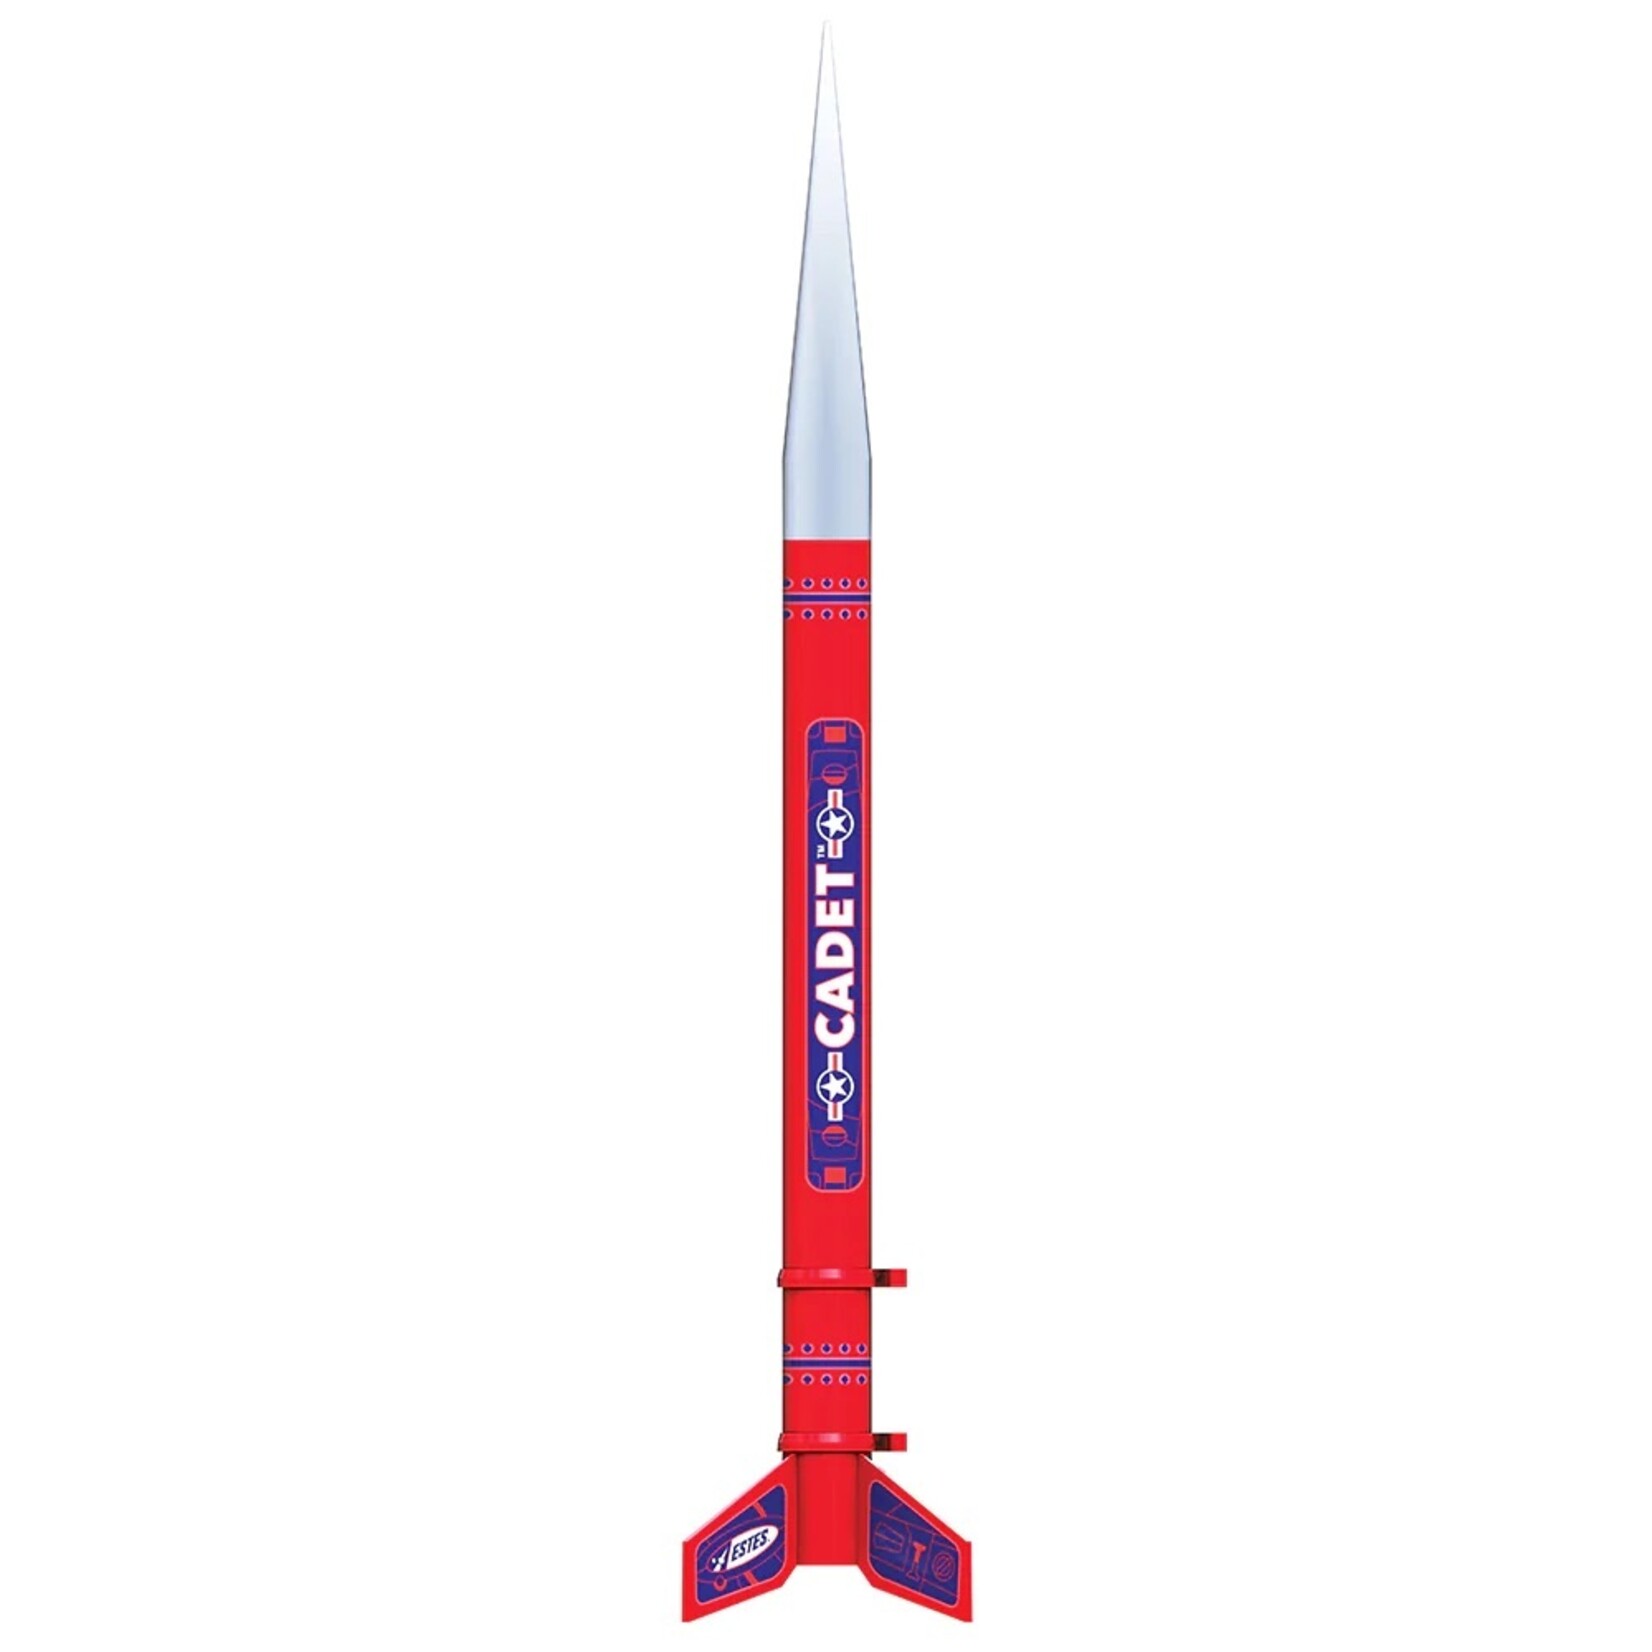 Estes Estes Cadet Rocket #EST2021